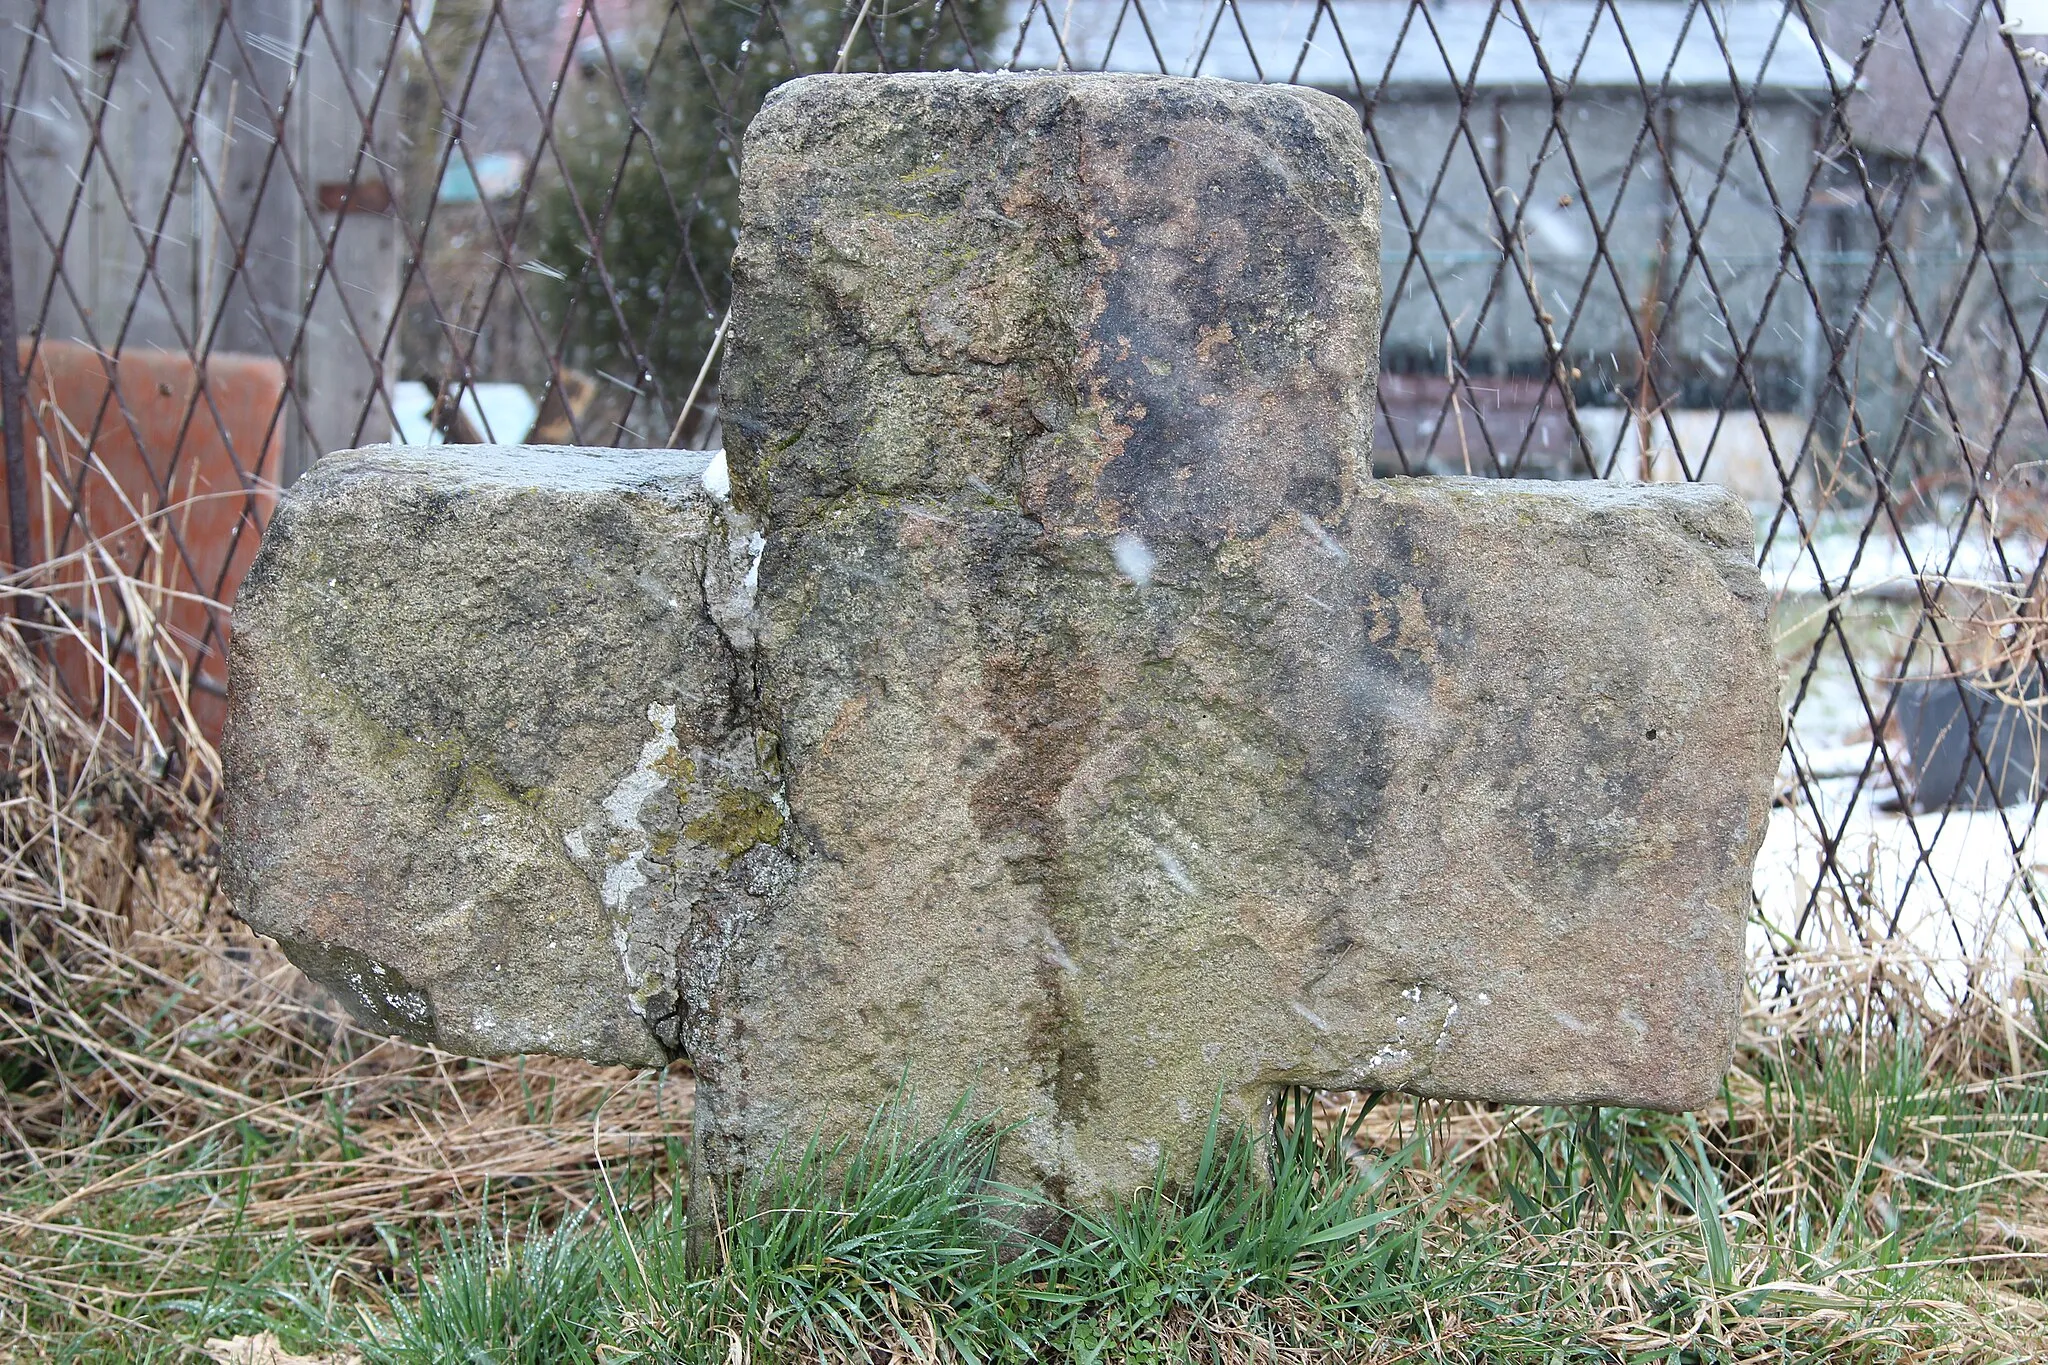 Photo showing: Stone cross in Wałbrzych